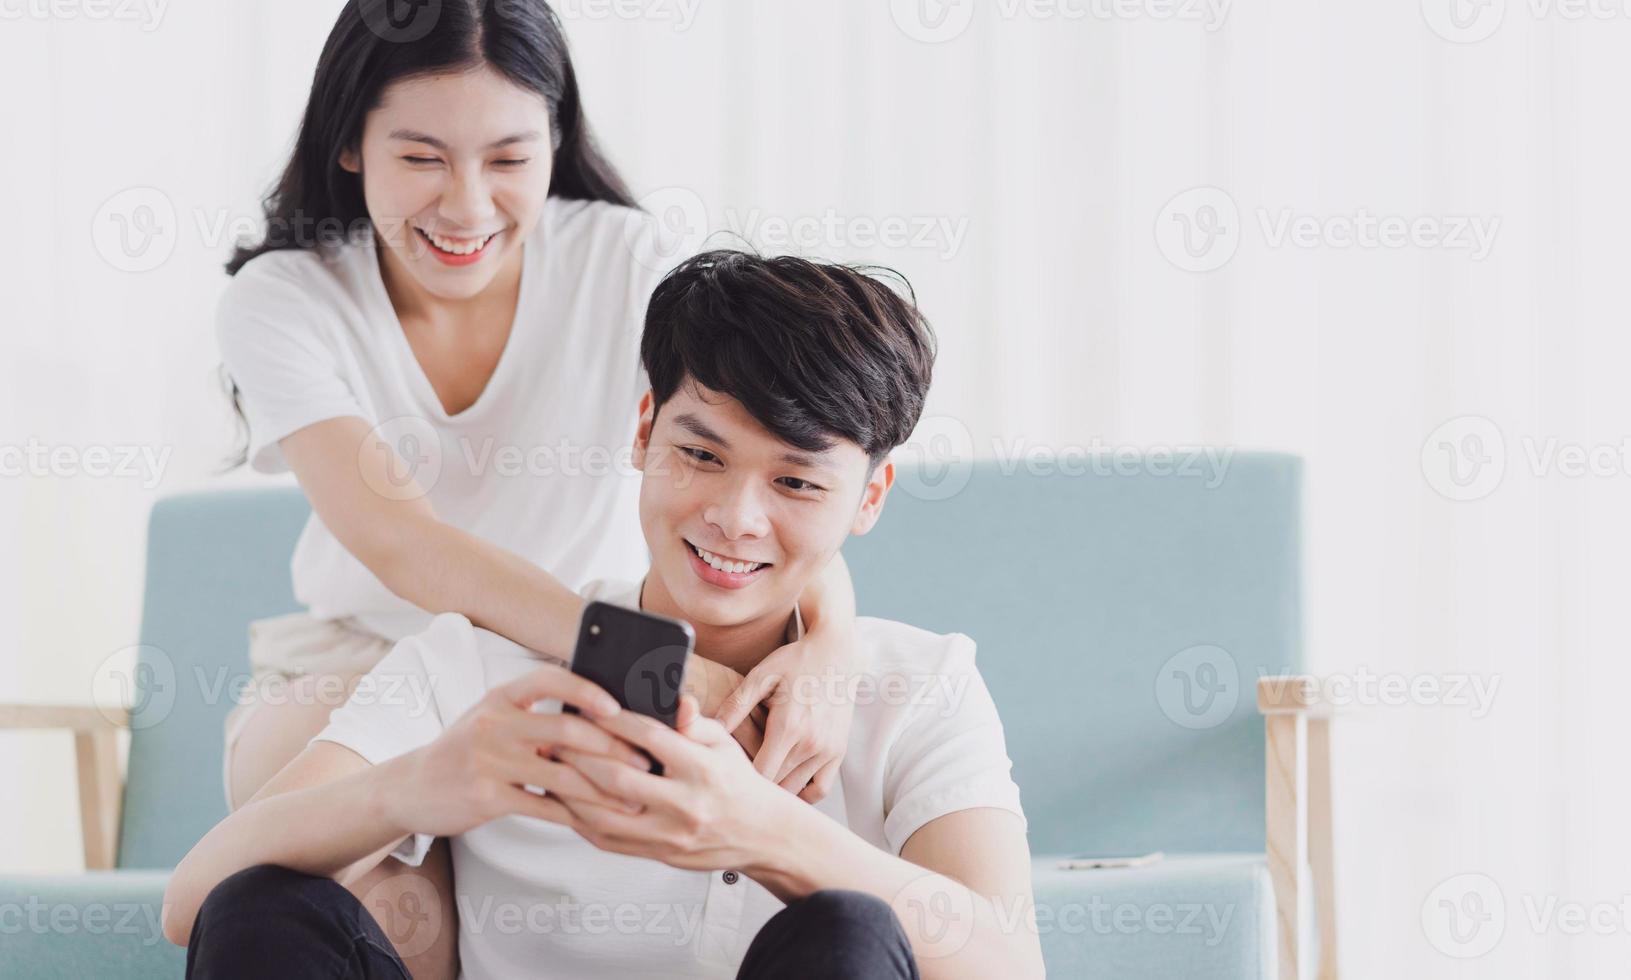 jovem casal olhando para o telefone com uma expressão feliz foto